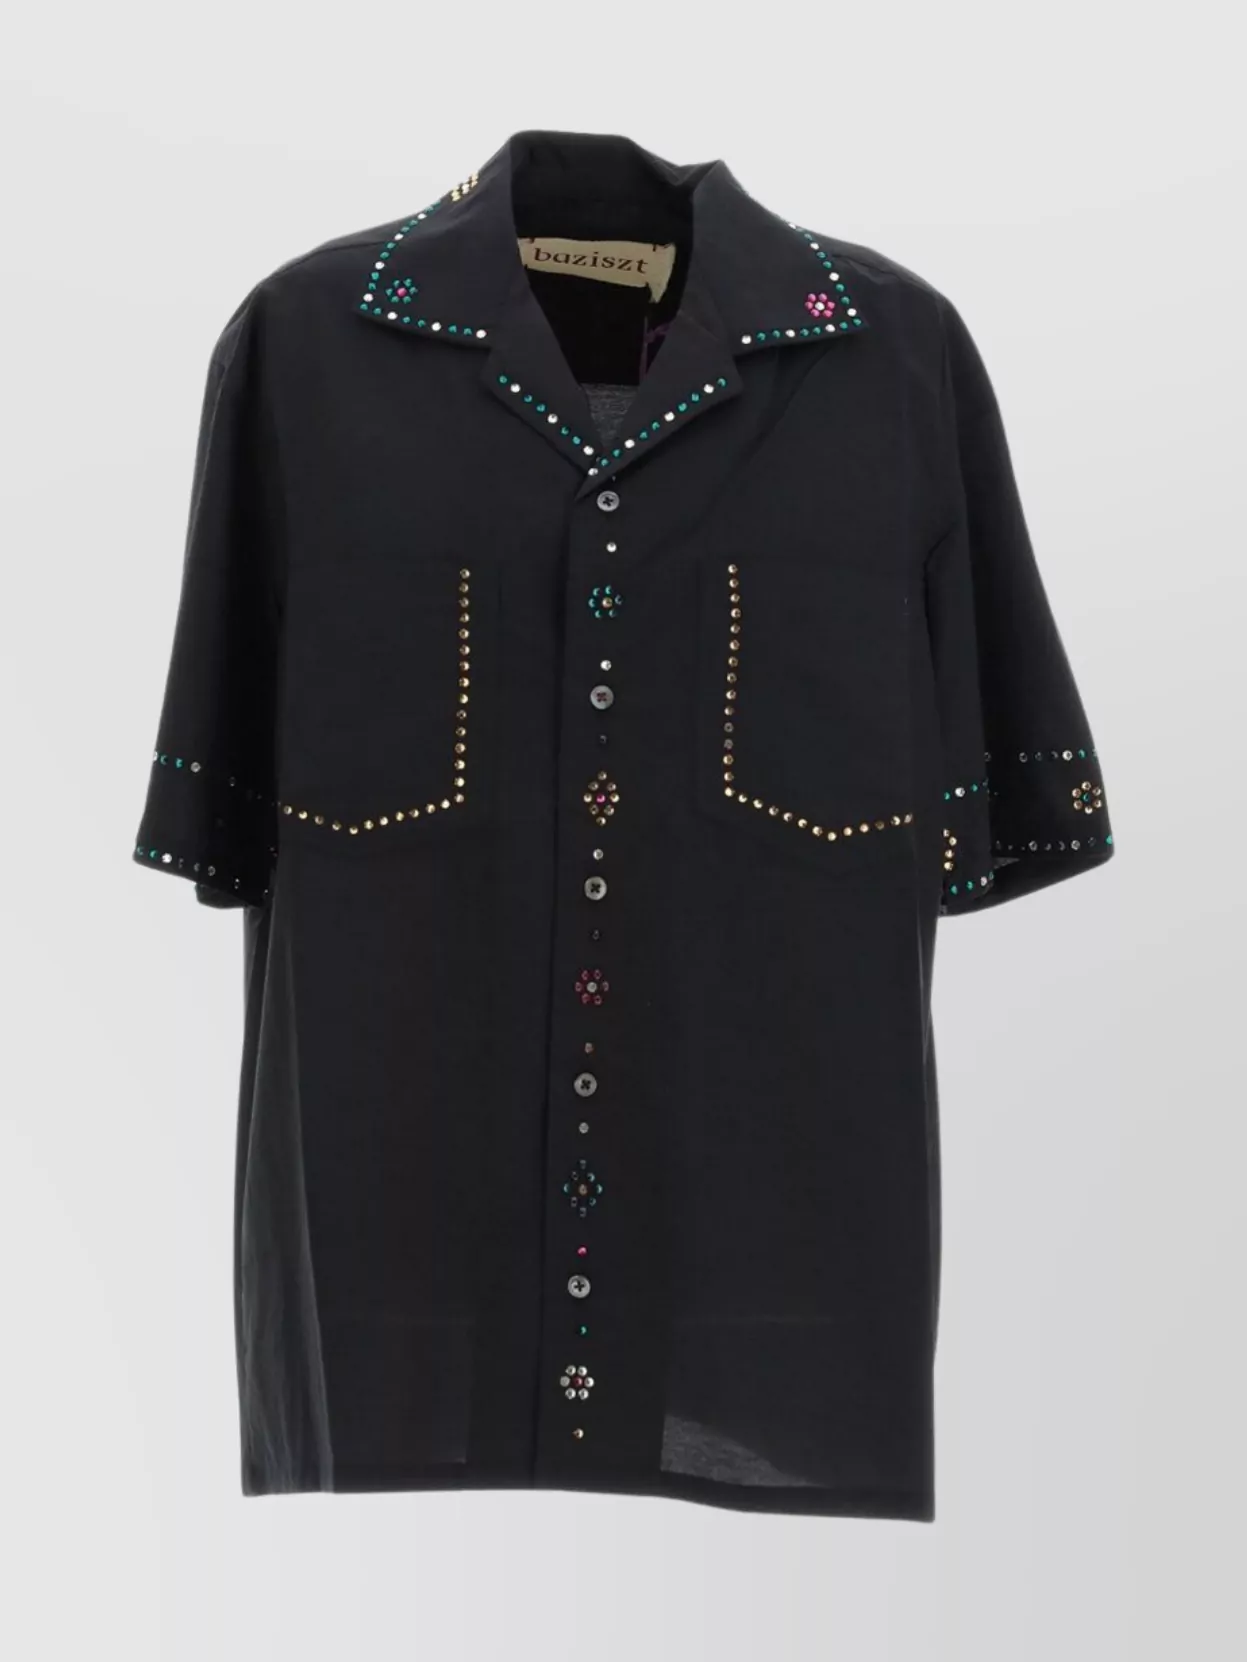 Shop Baziszt Embellished Collar Cuffs Pockets Short Sleeves Shirt